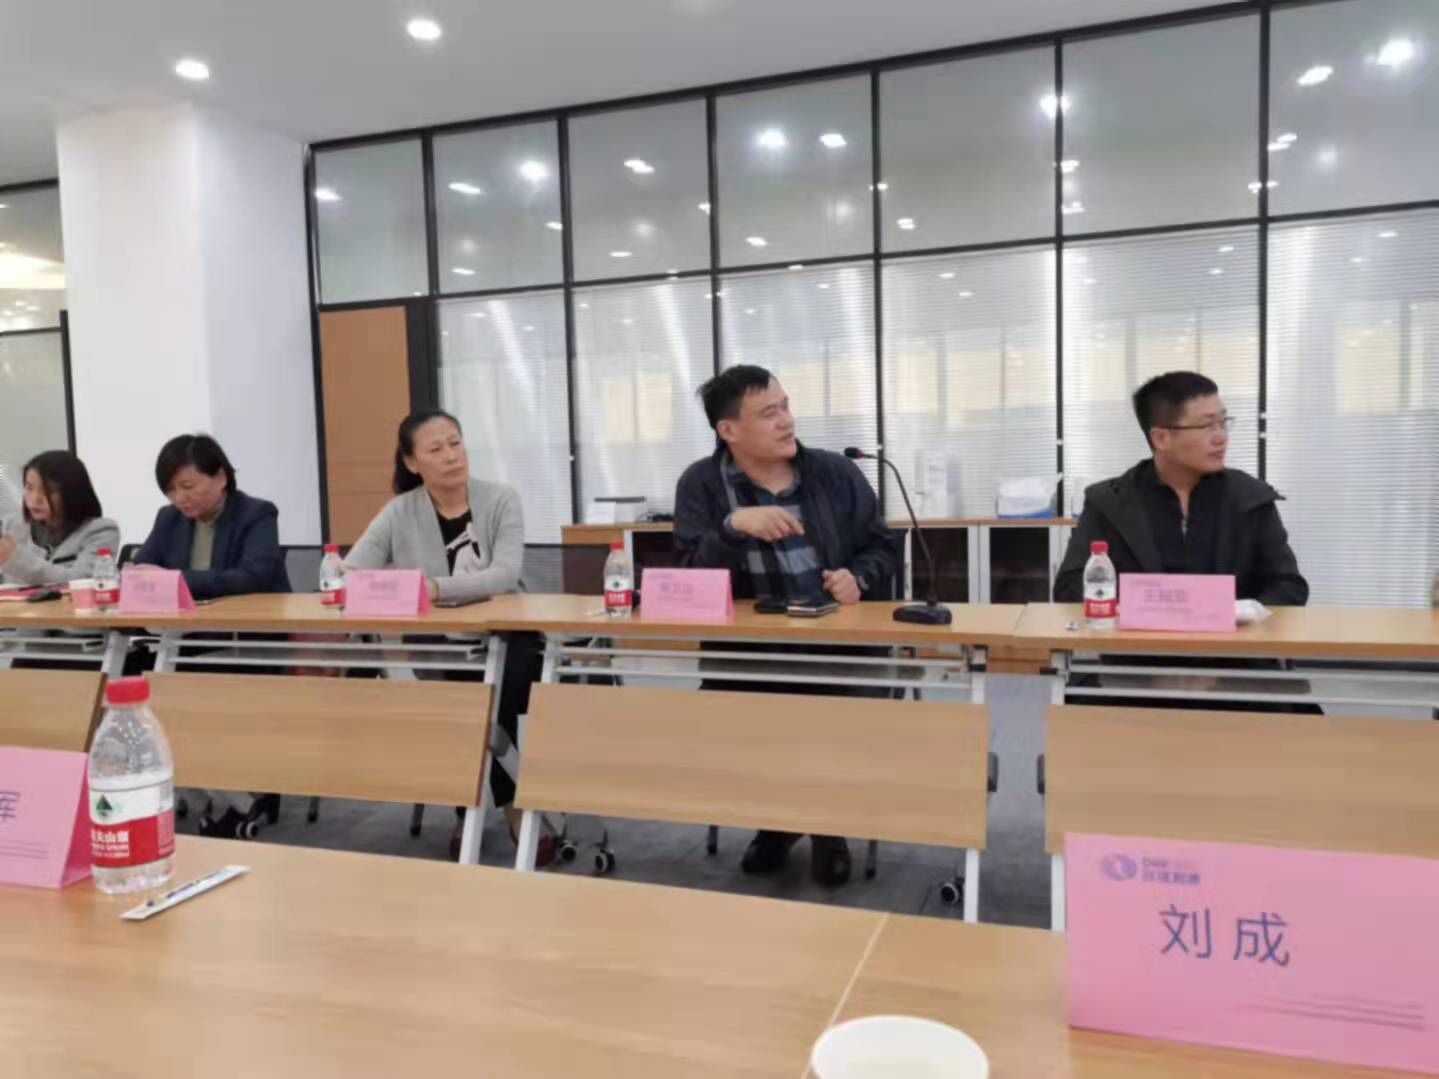 多维智康生物技术集团在济南举行座谈会，就企业发展倾听专家学者意见